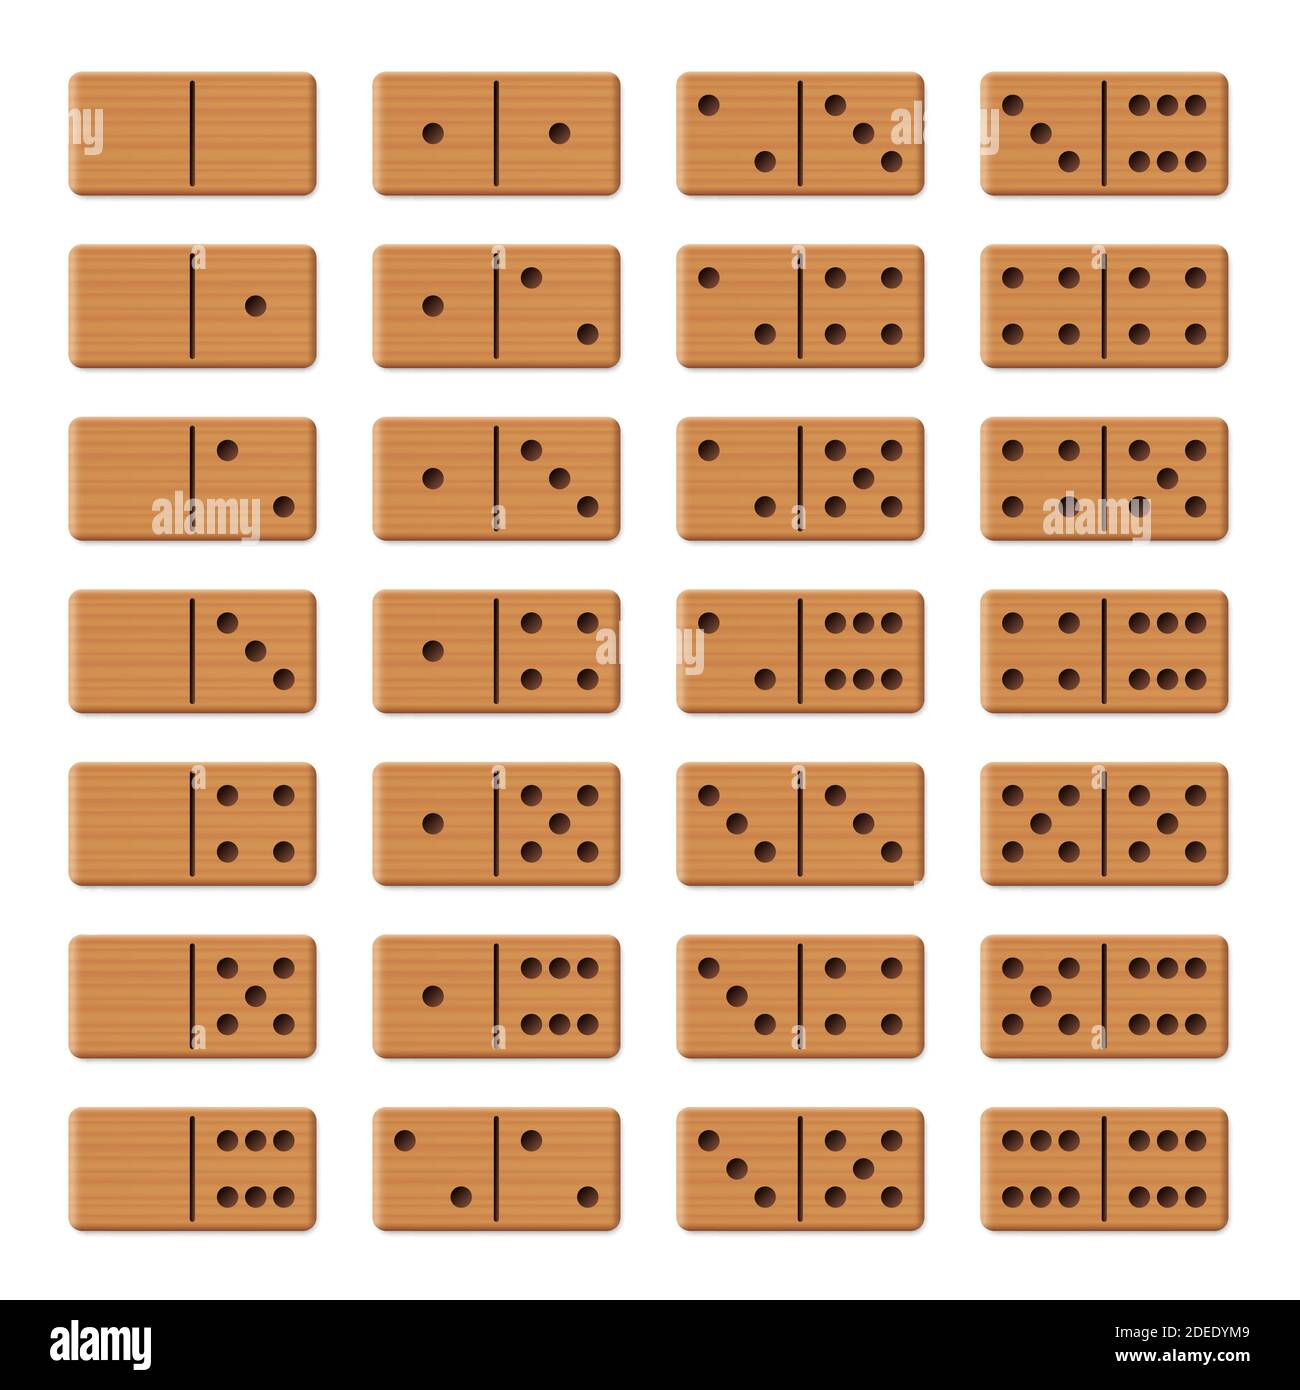 Dominos - jeu complet, collection de 28 tuiles texturées en bois disposées - illustration sur fond blanc. Banque D'Images